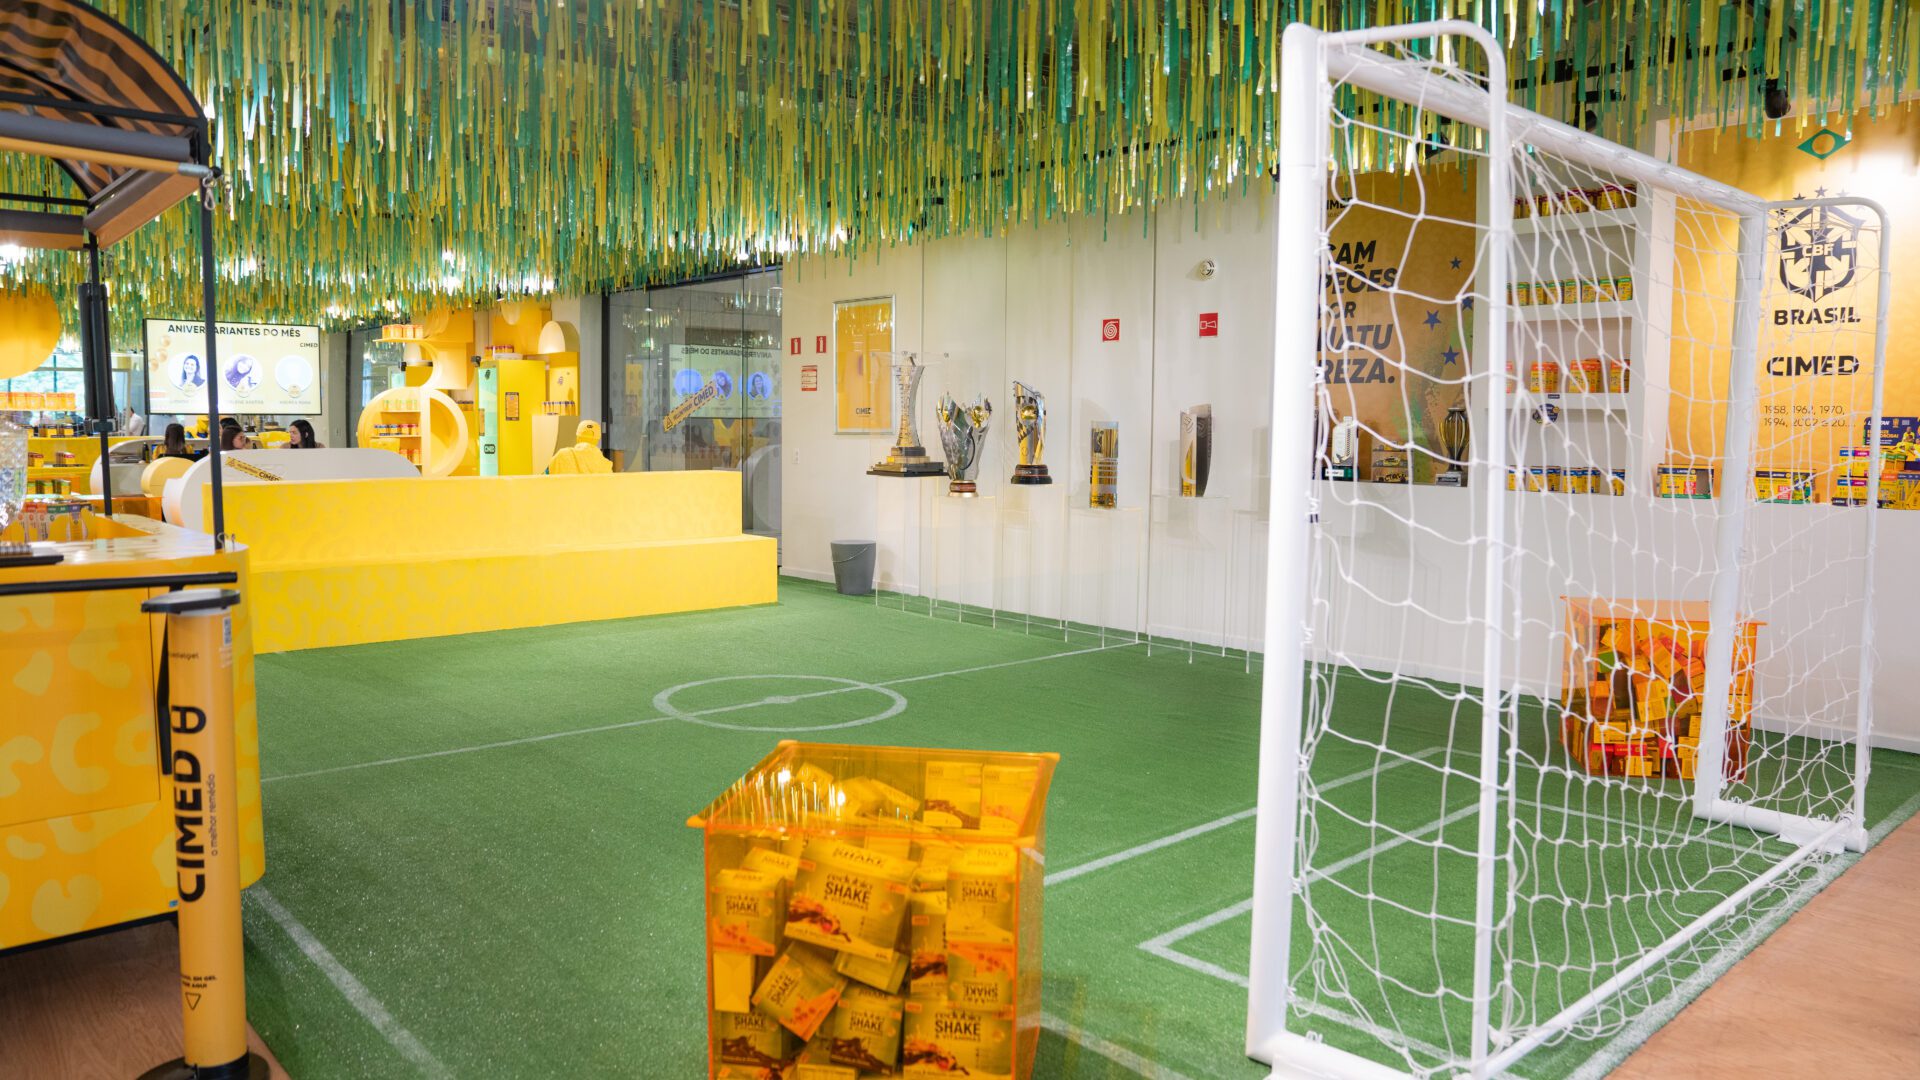 Cimed cria cenografia com campo de futebol em sua sede em São Paulo